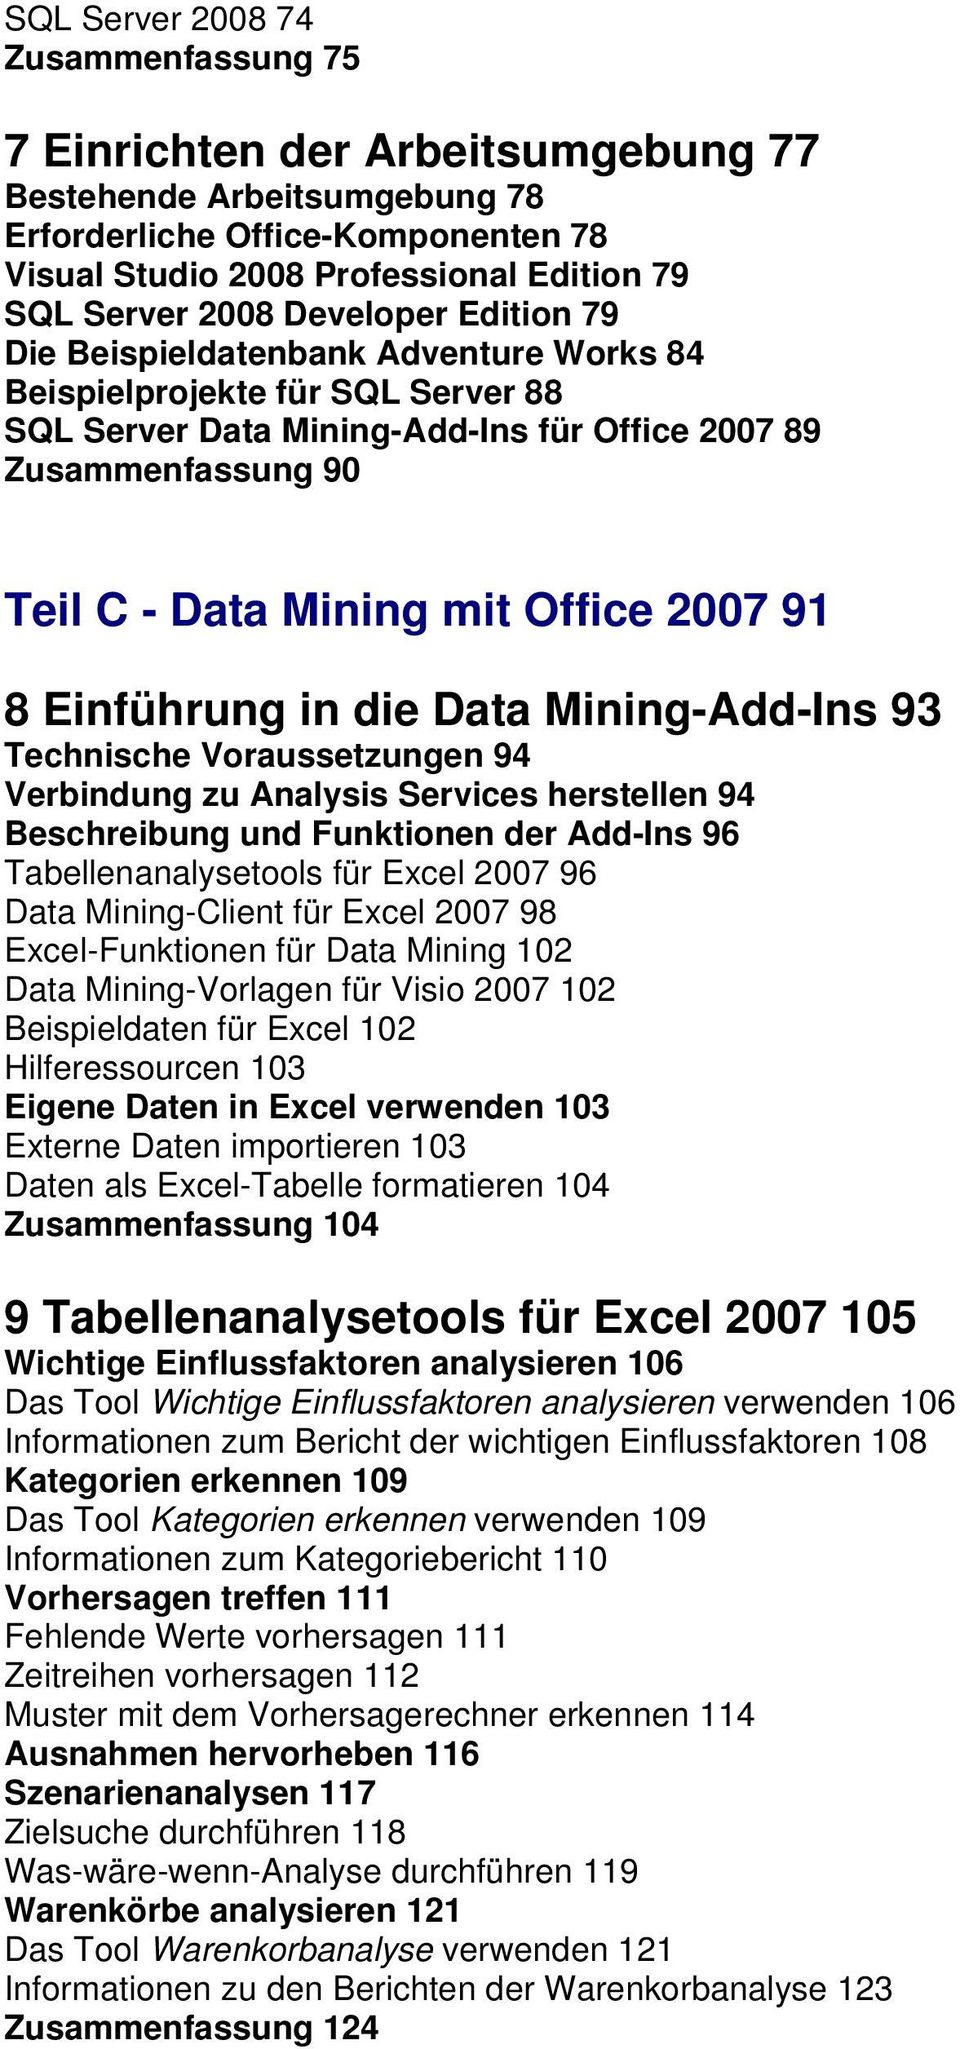 2007 91 8 Einführung in die Data Mining-Add-Ins 93 Technische Voraussetzungen 94 Verbindung zu Analysis Services herstellen 94 Beschreibung und Funktionen der Add-Ins 96 Tabellenanalysetools für